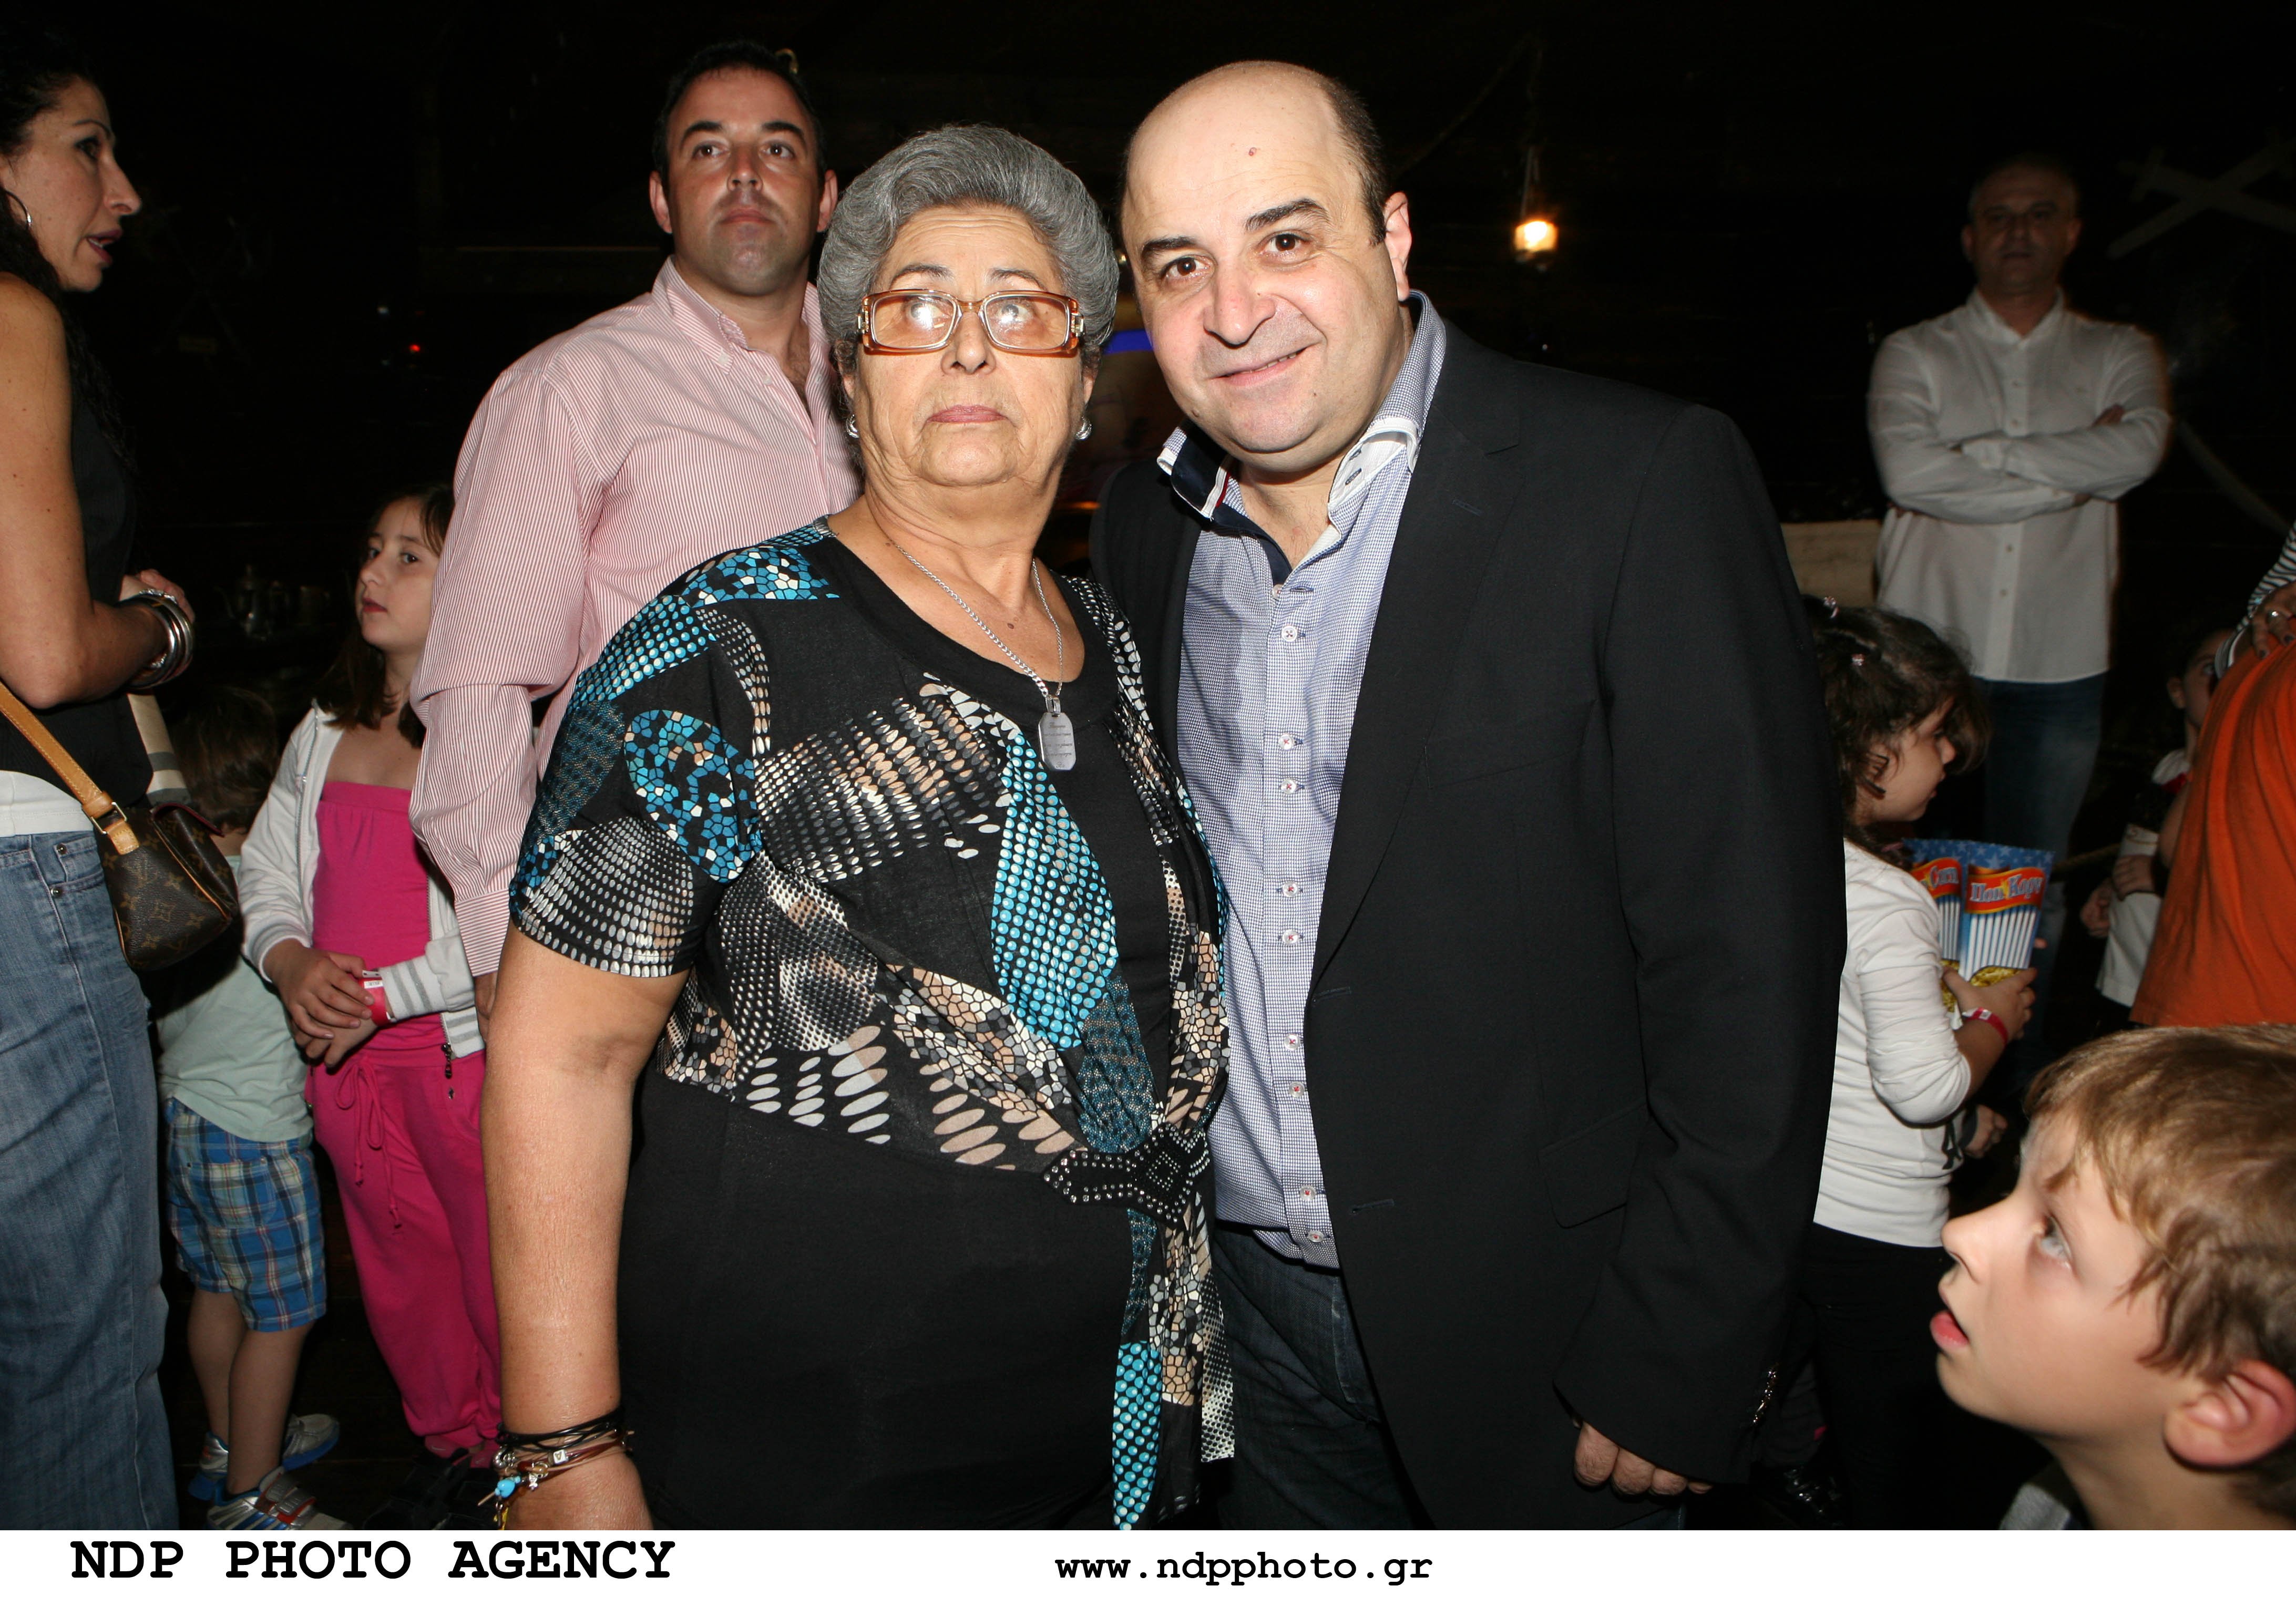 Μάρκος Σεφερλής: Δείτε την γλυκύτατη μητέρα του- Η κοινή φωτογραφία με την Έλενα Τσαβαλιά